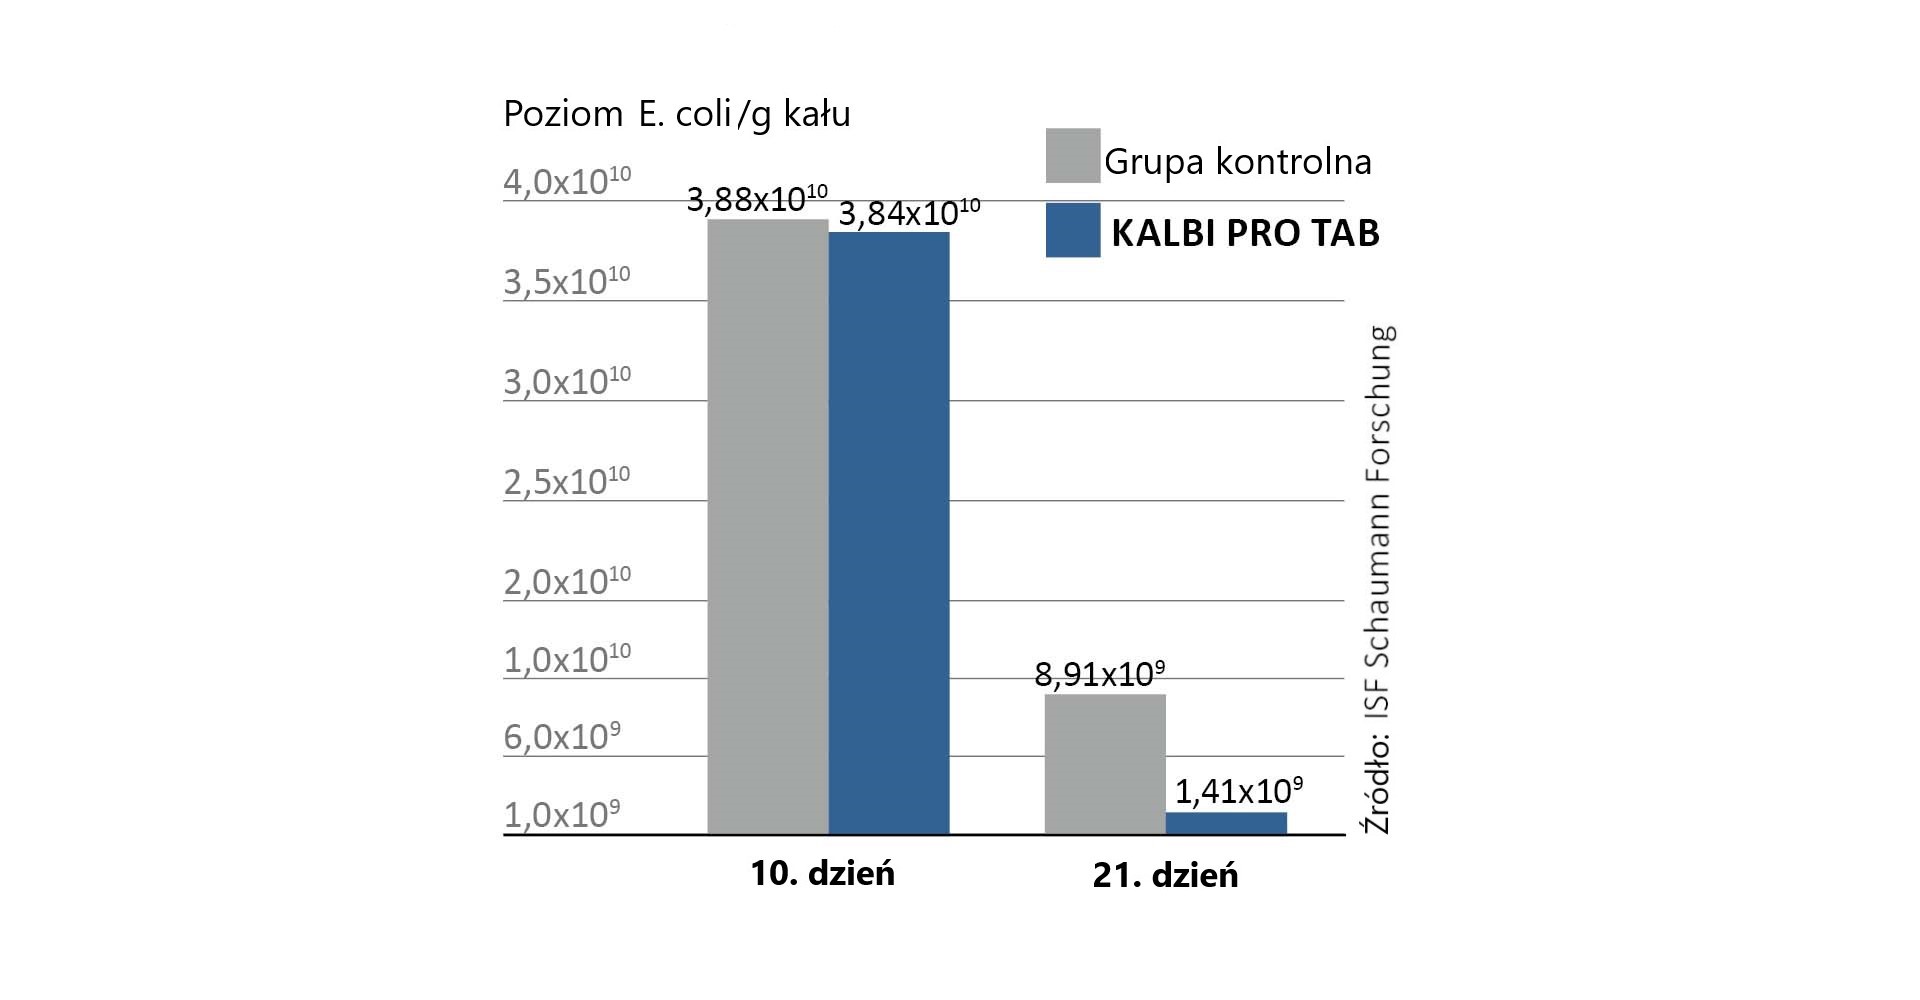 Bakterie kwasu mlekowego w KALBI PRO TAB redukują namnażanie się patogenów